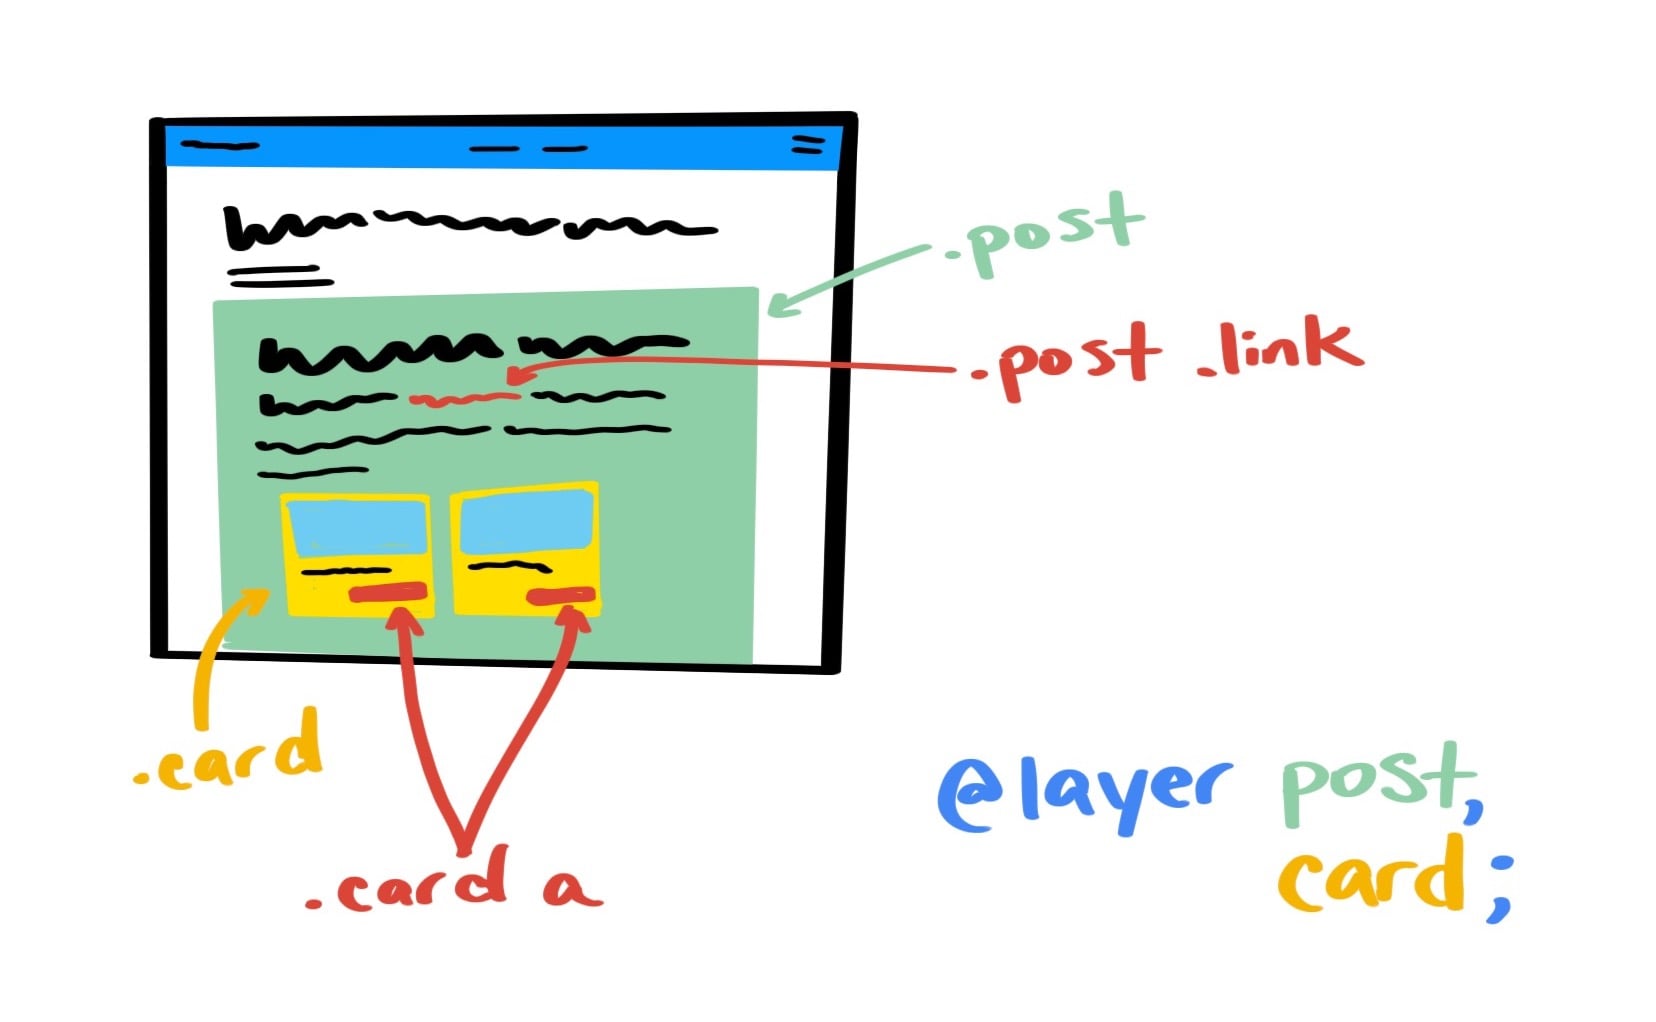 رسم توضيحي من عرض توضيحي للمشروع يبرز واجهة المستخدم